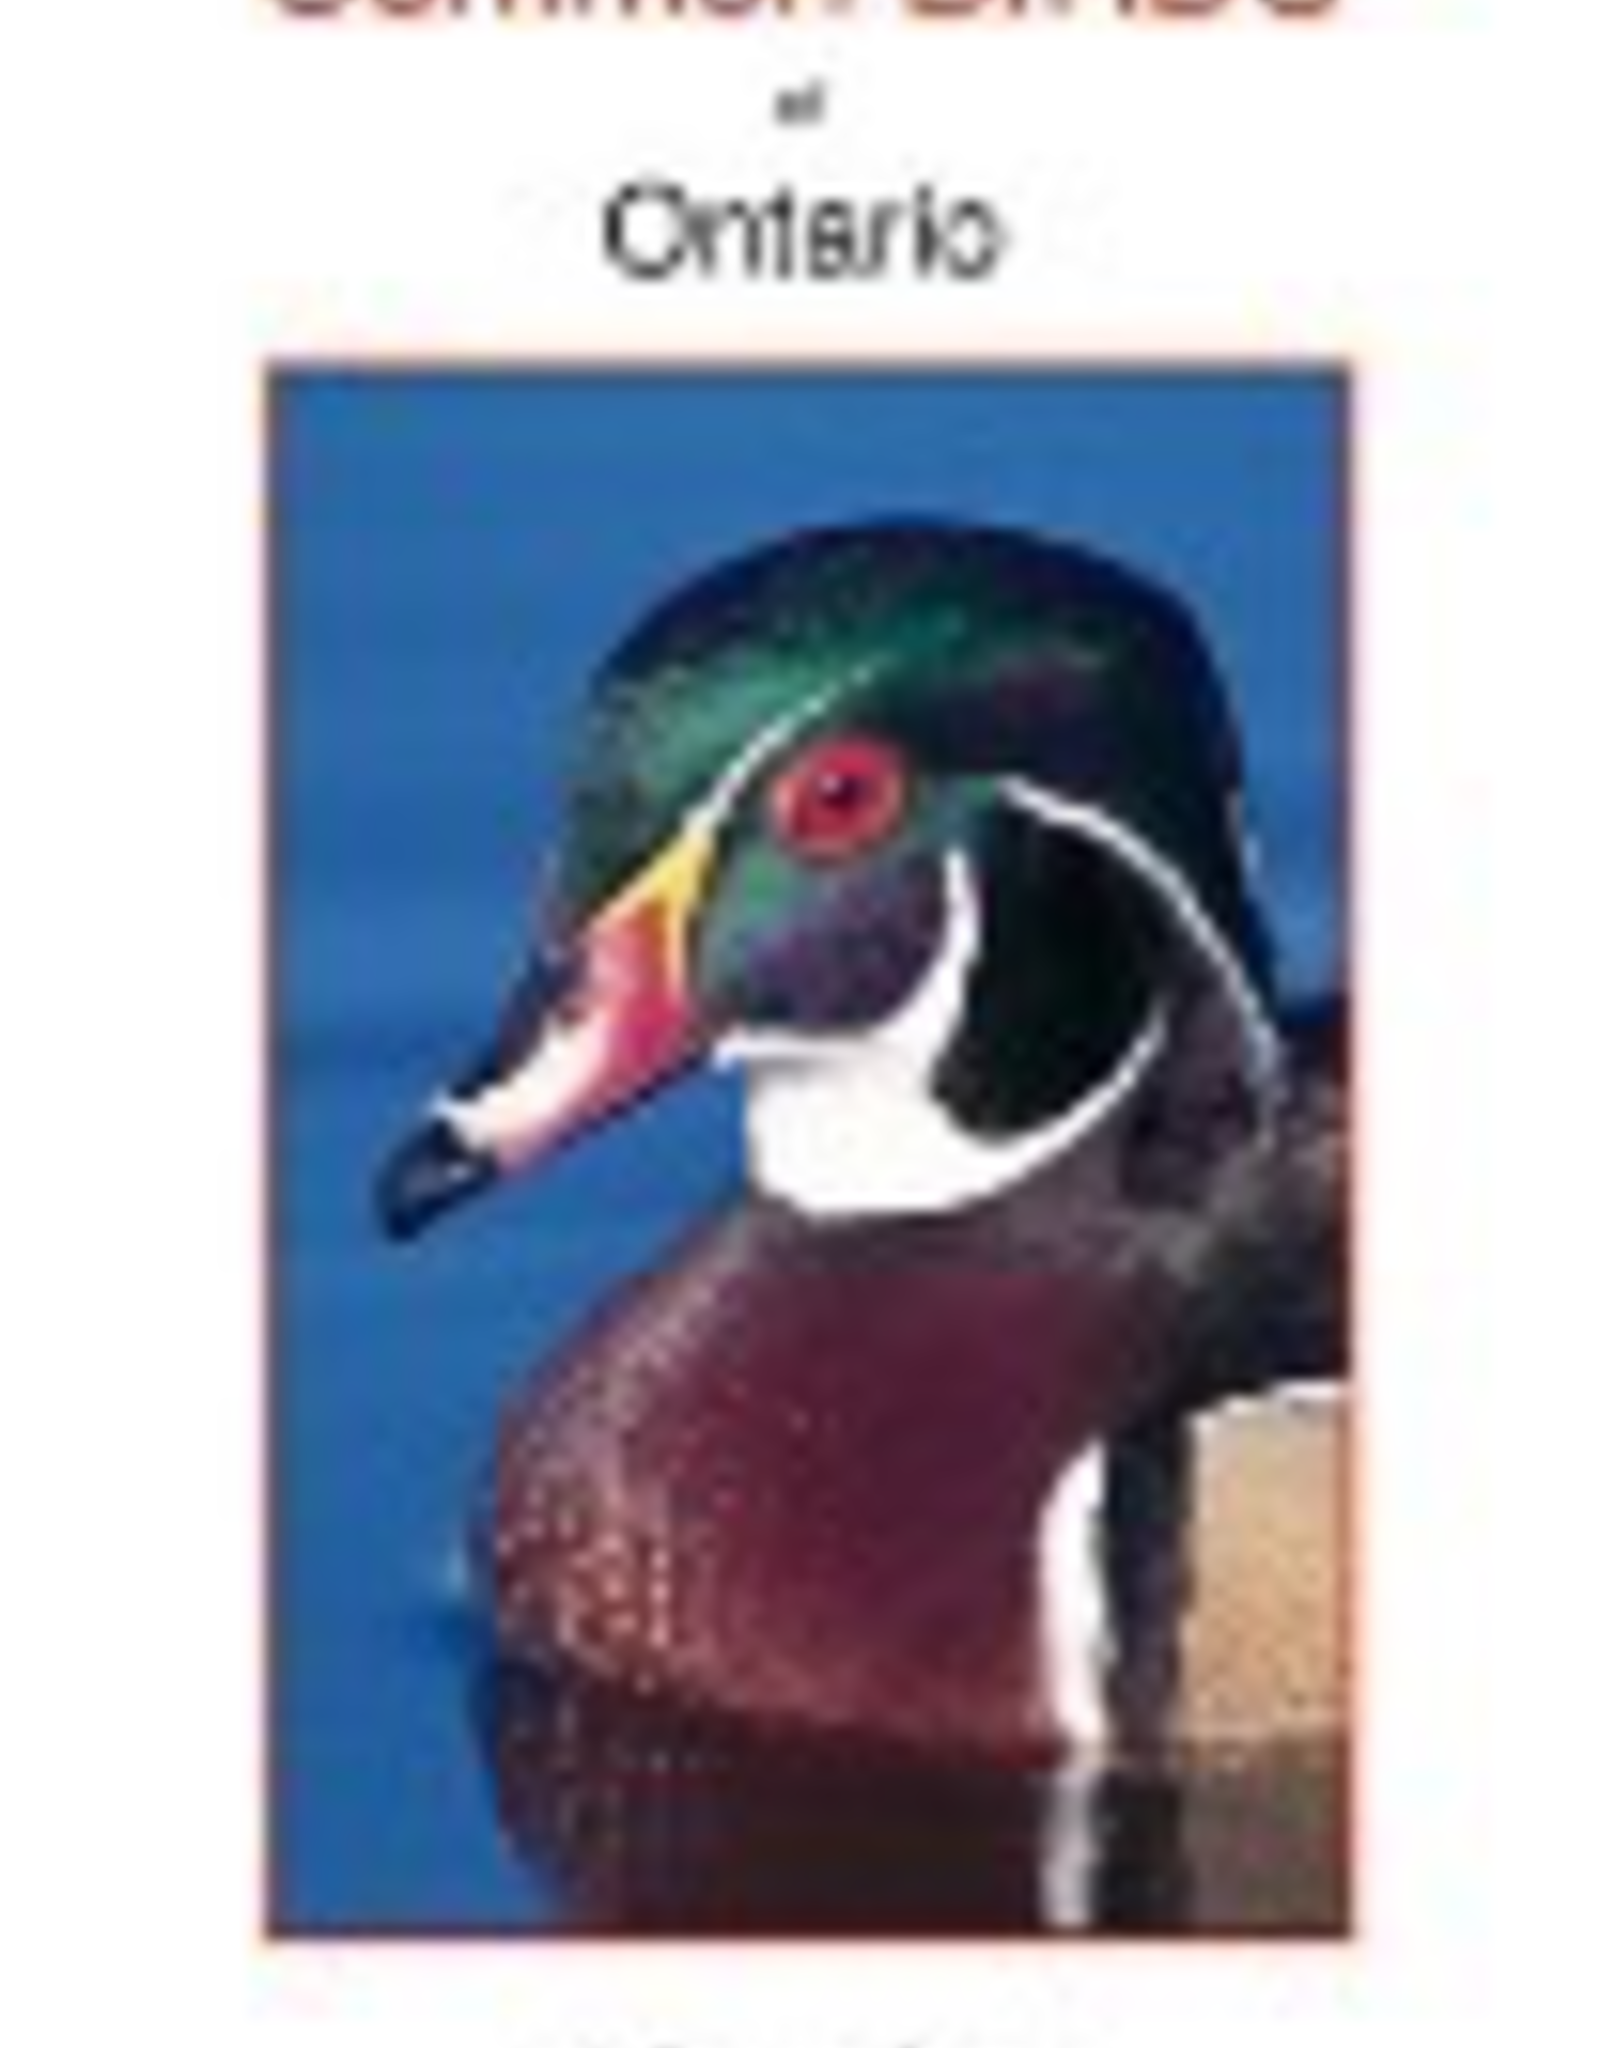 Calypso BTLCBO Common Birds of Ontario. Printed in Canada.